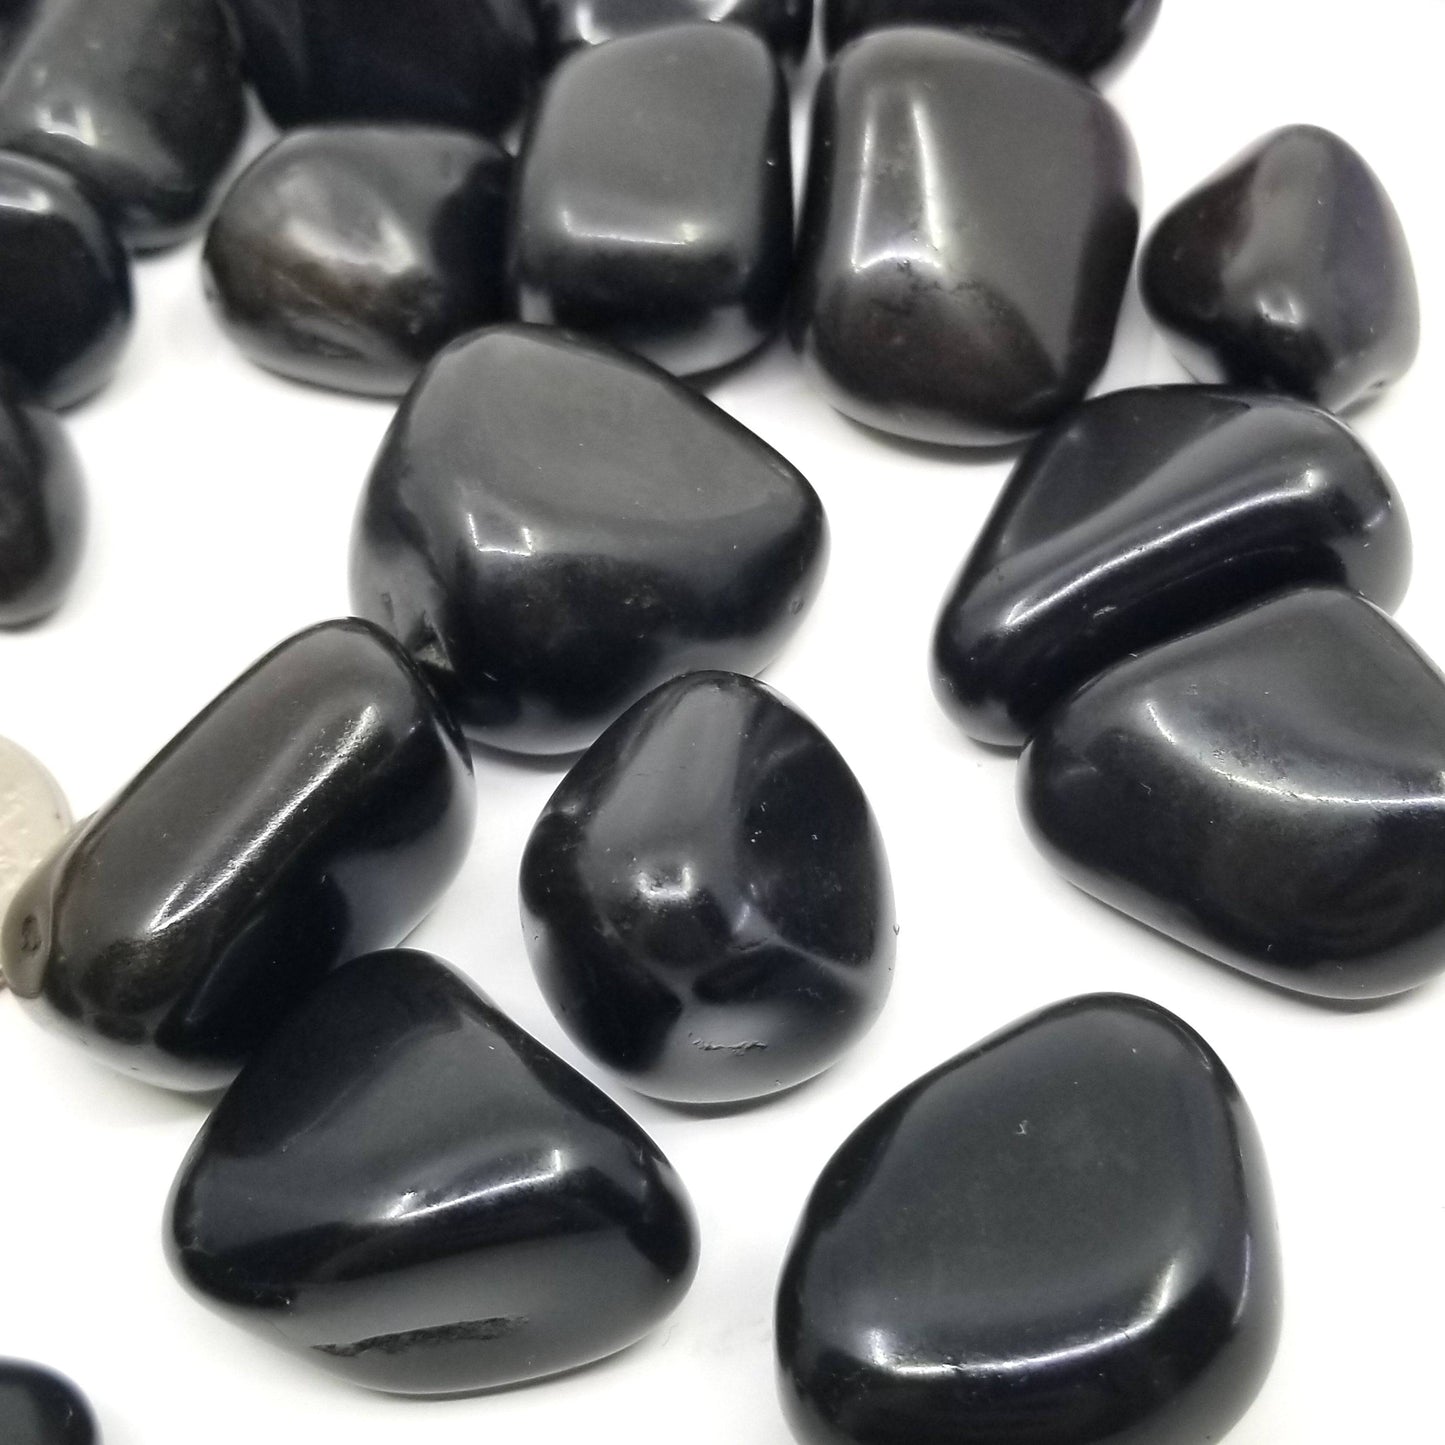 Black Tourmaline Tumbled Stones 1 LB